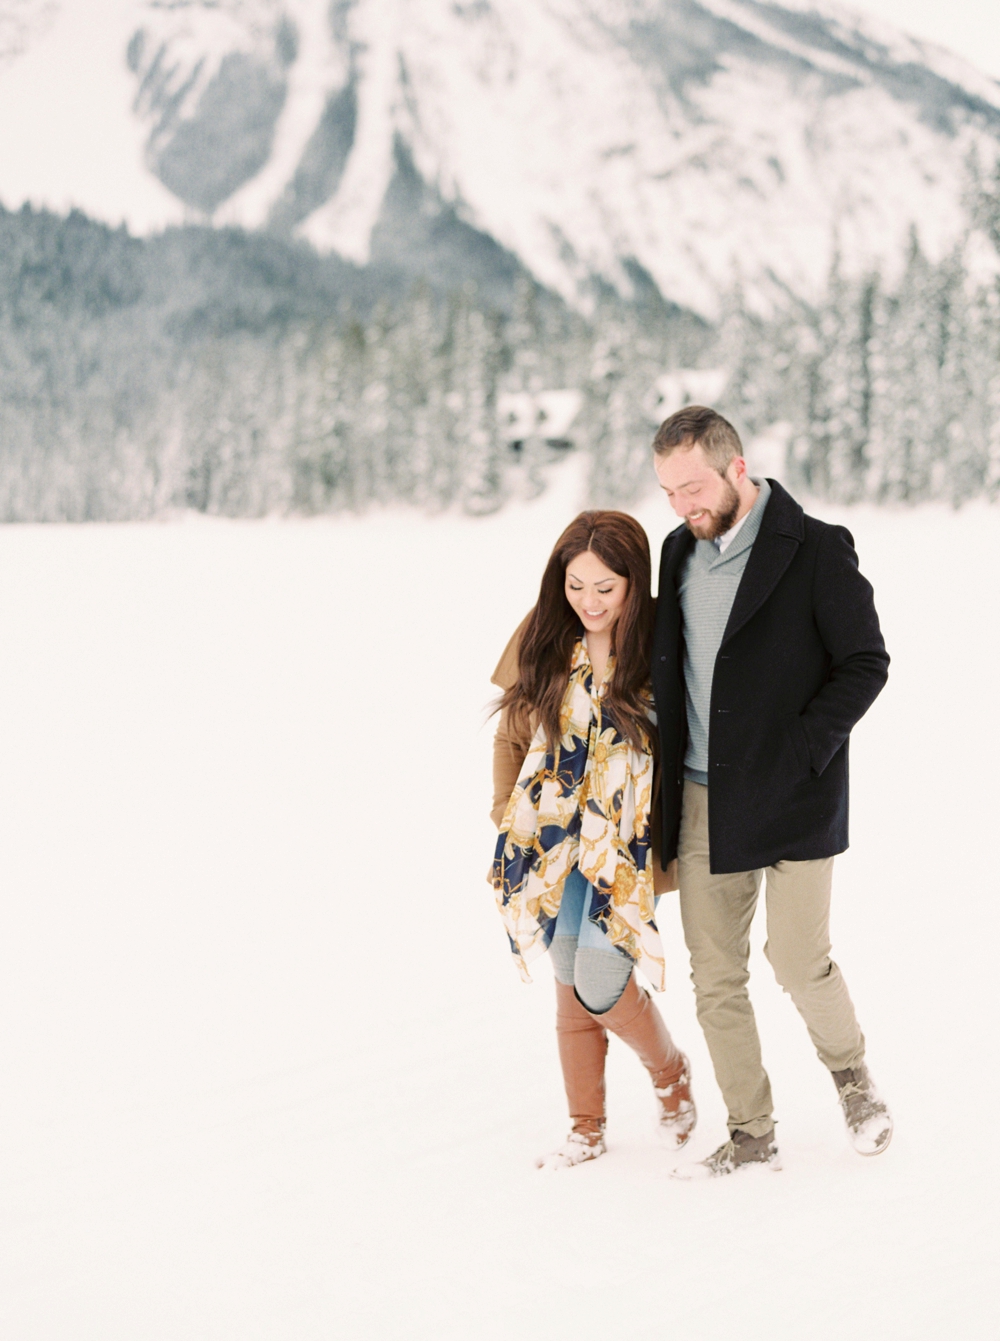 Emerald Lake Lodge Photographers | Calgary Wedding Photographers | Elopement photographer | Rocky Mountain Banff Engagement Session | Justine Milton Photography